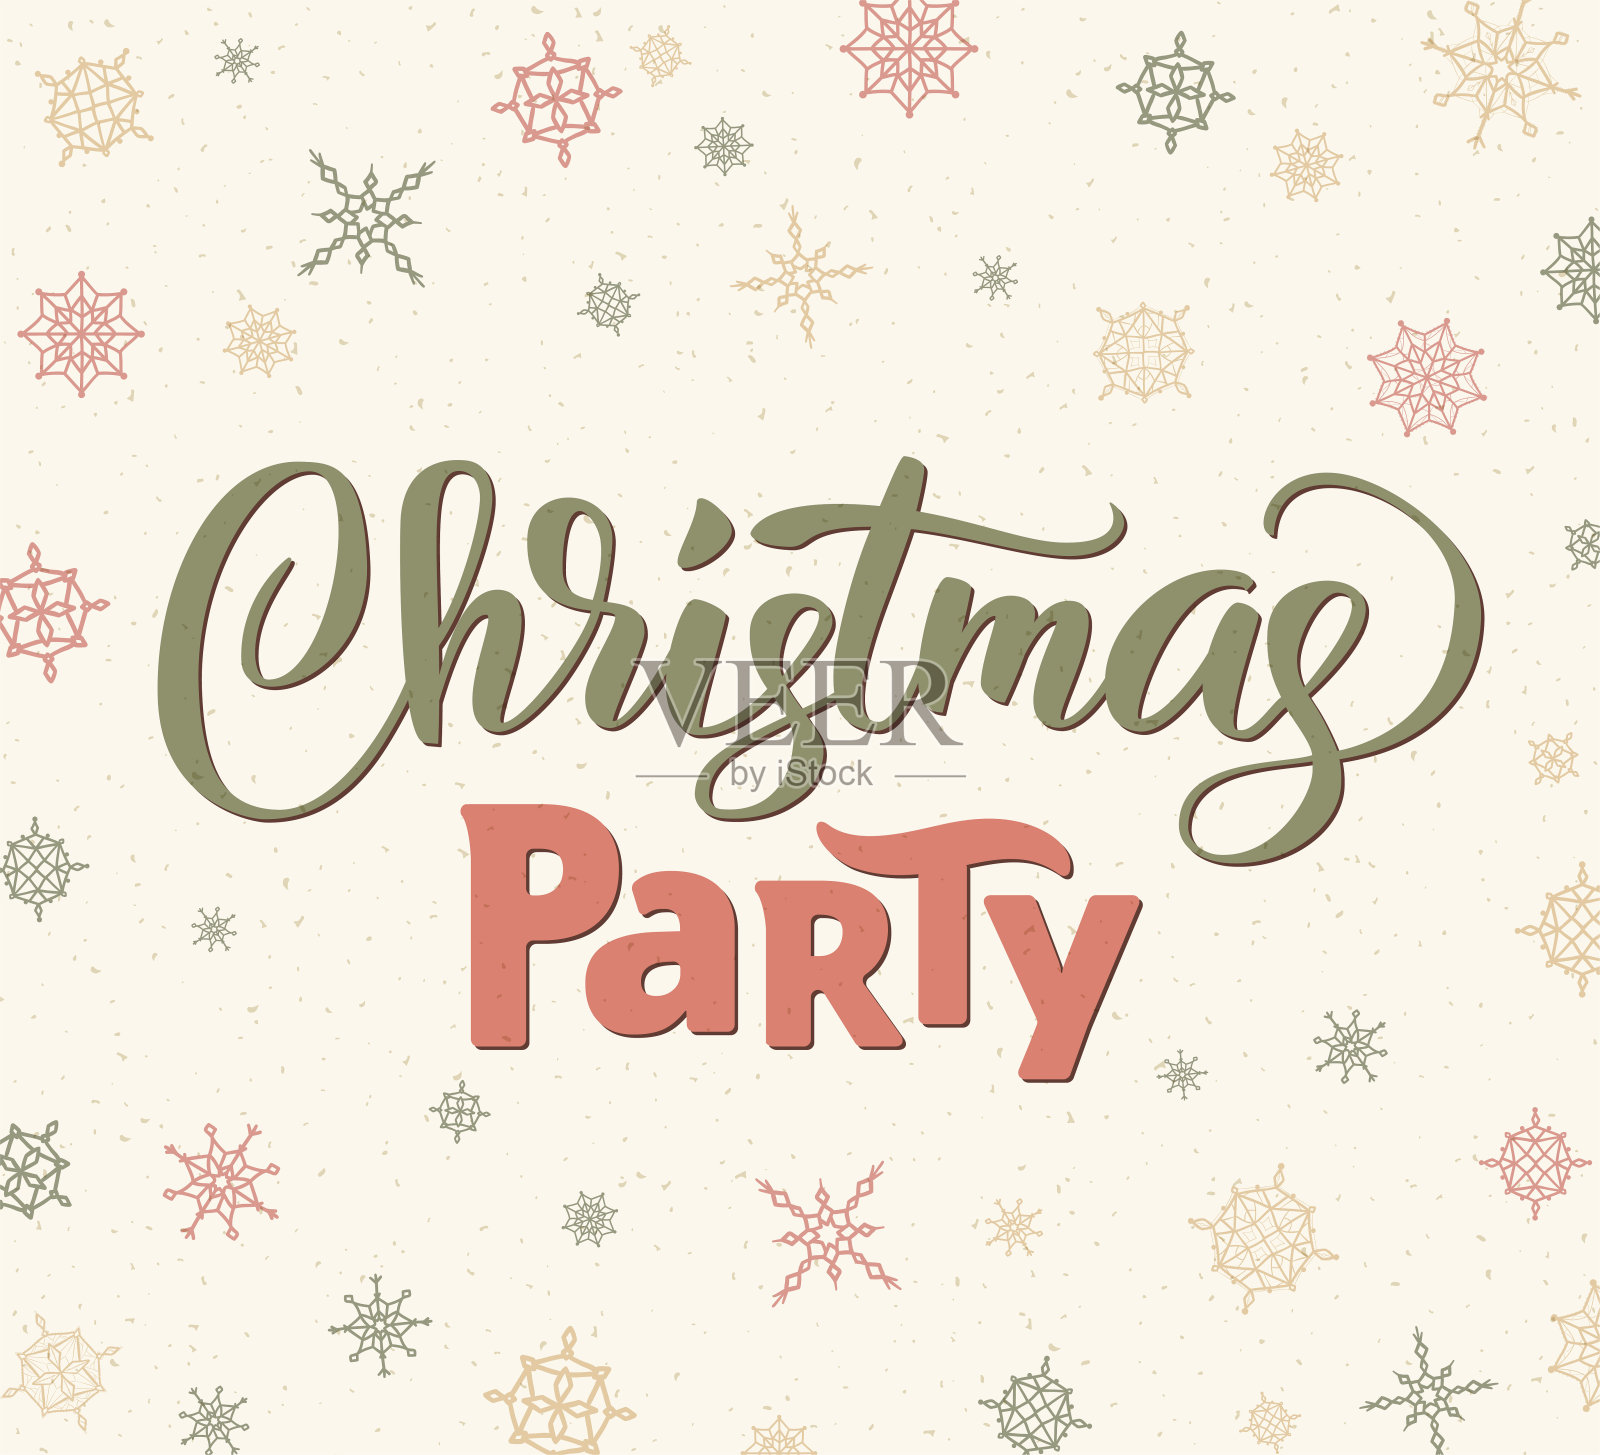 圣诞派对海报模板，矢量插图。手写字体，排版。背景与飘落的雪花设计模板素材